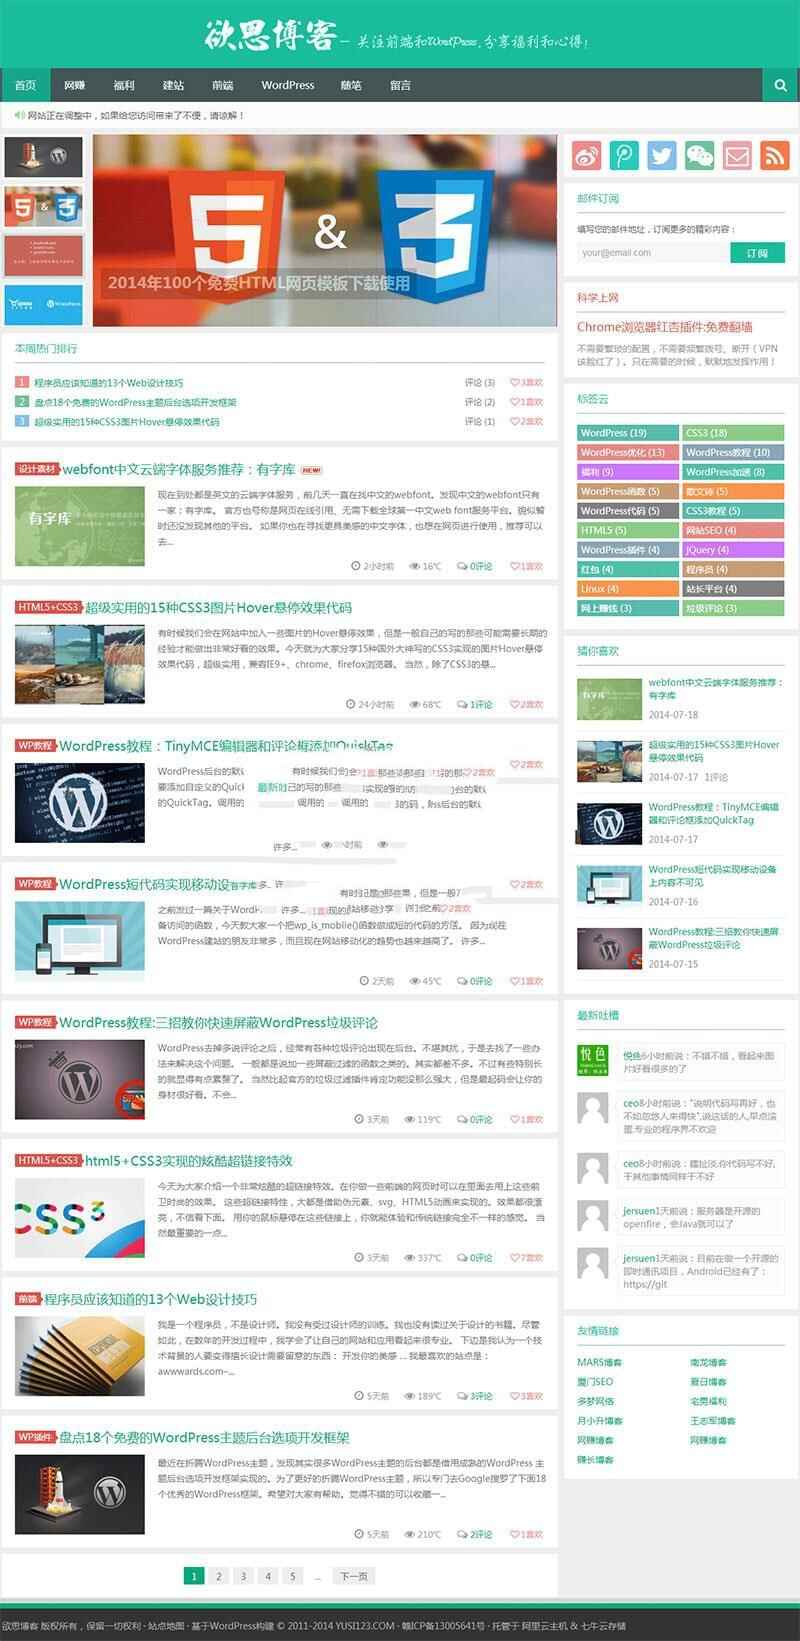 简约清楚明了的WordPress专客主题Yusi1.0_源码下载1883,简约,净明,清楚明了,wordpress,专客